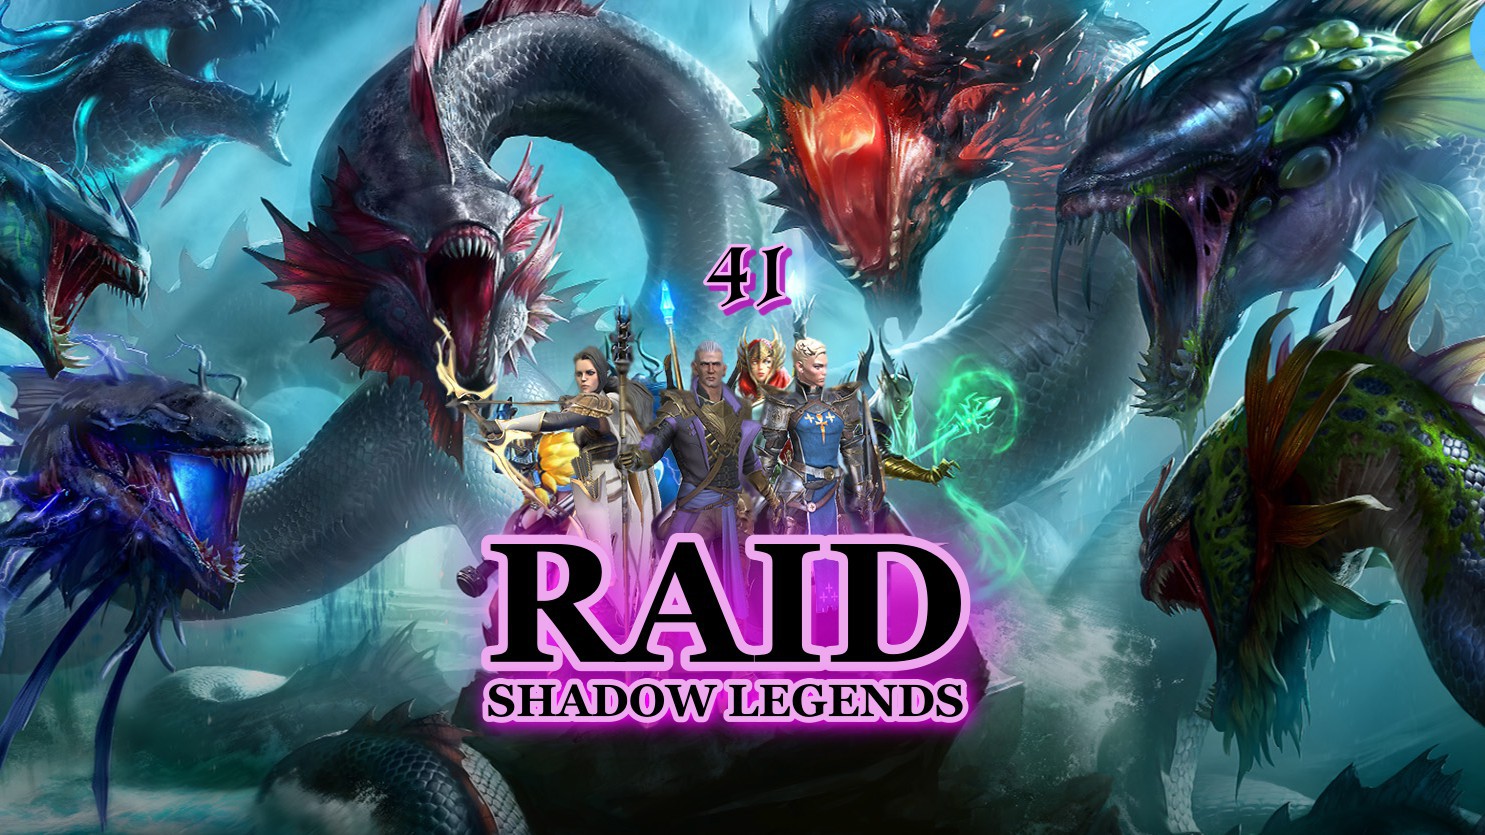 RAID Shadow Legends 41